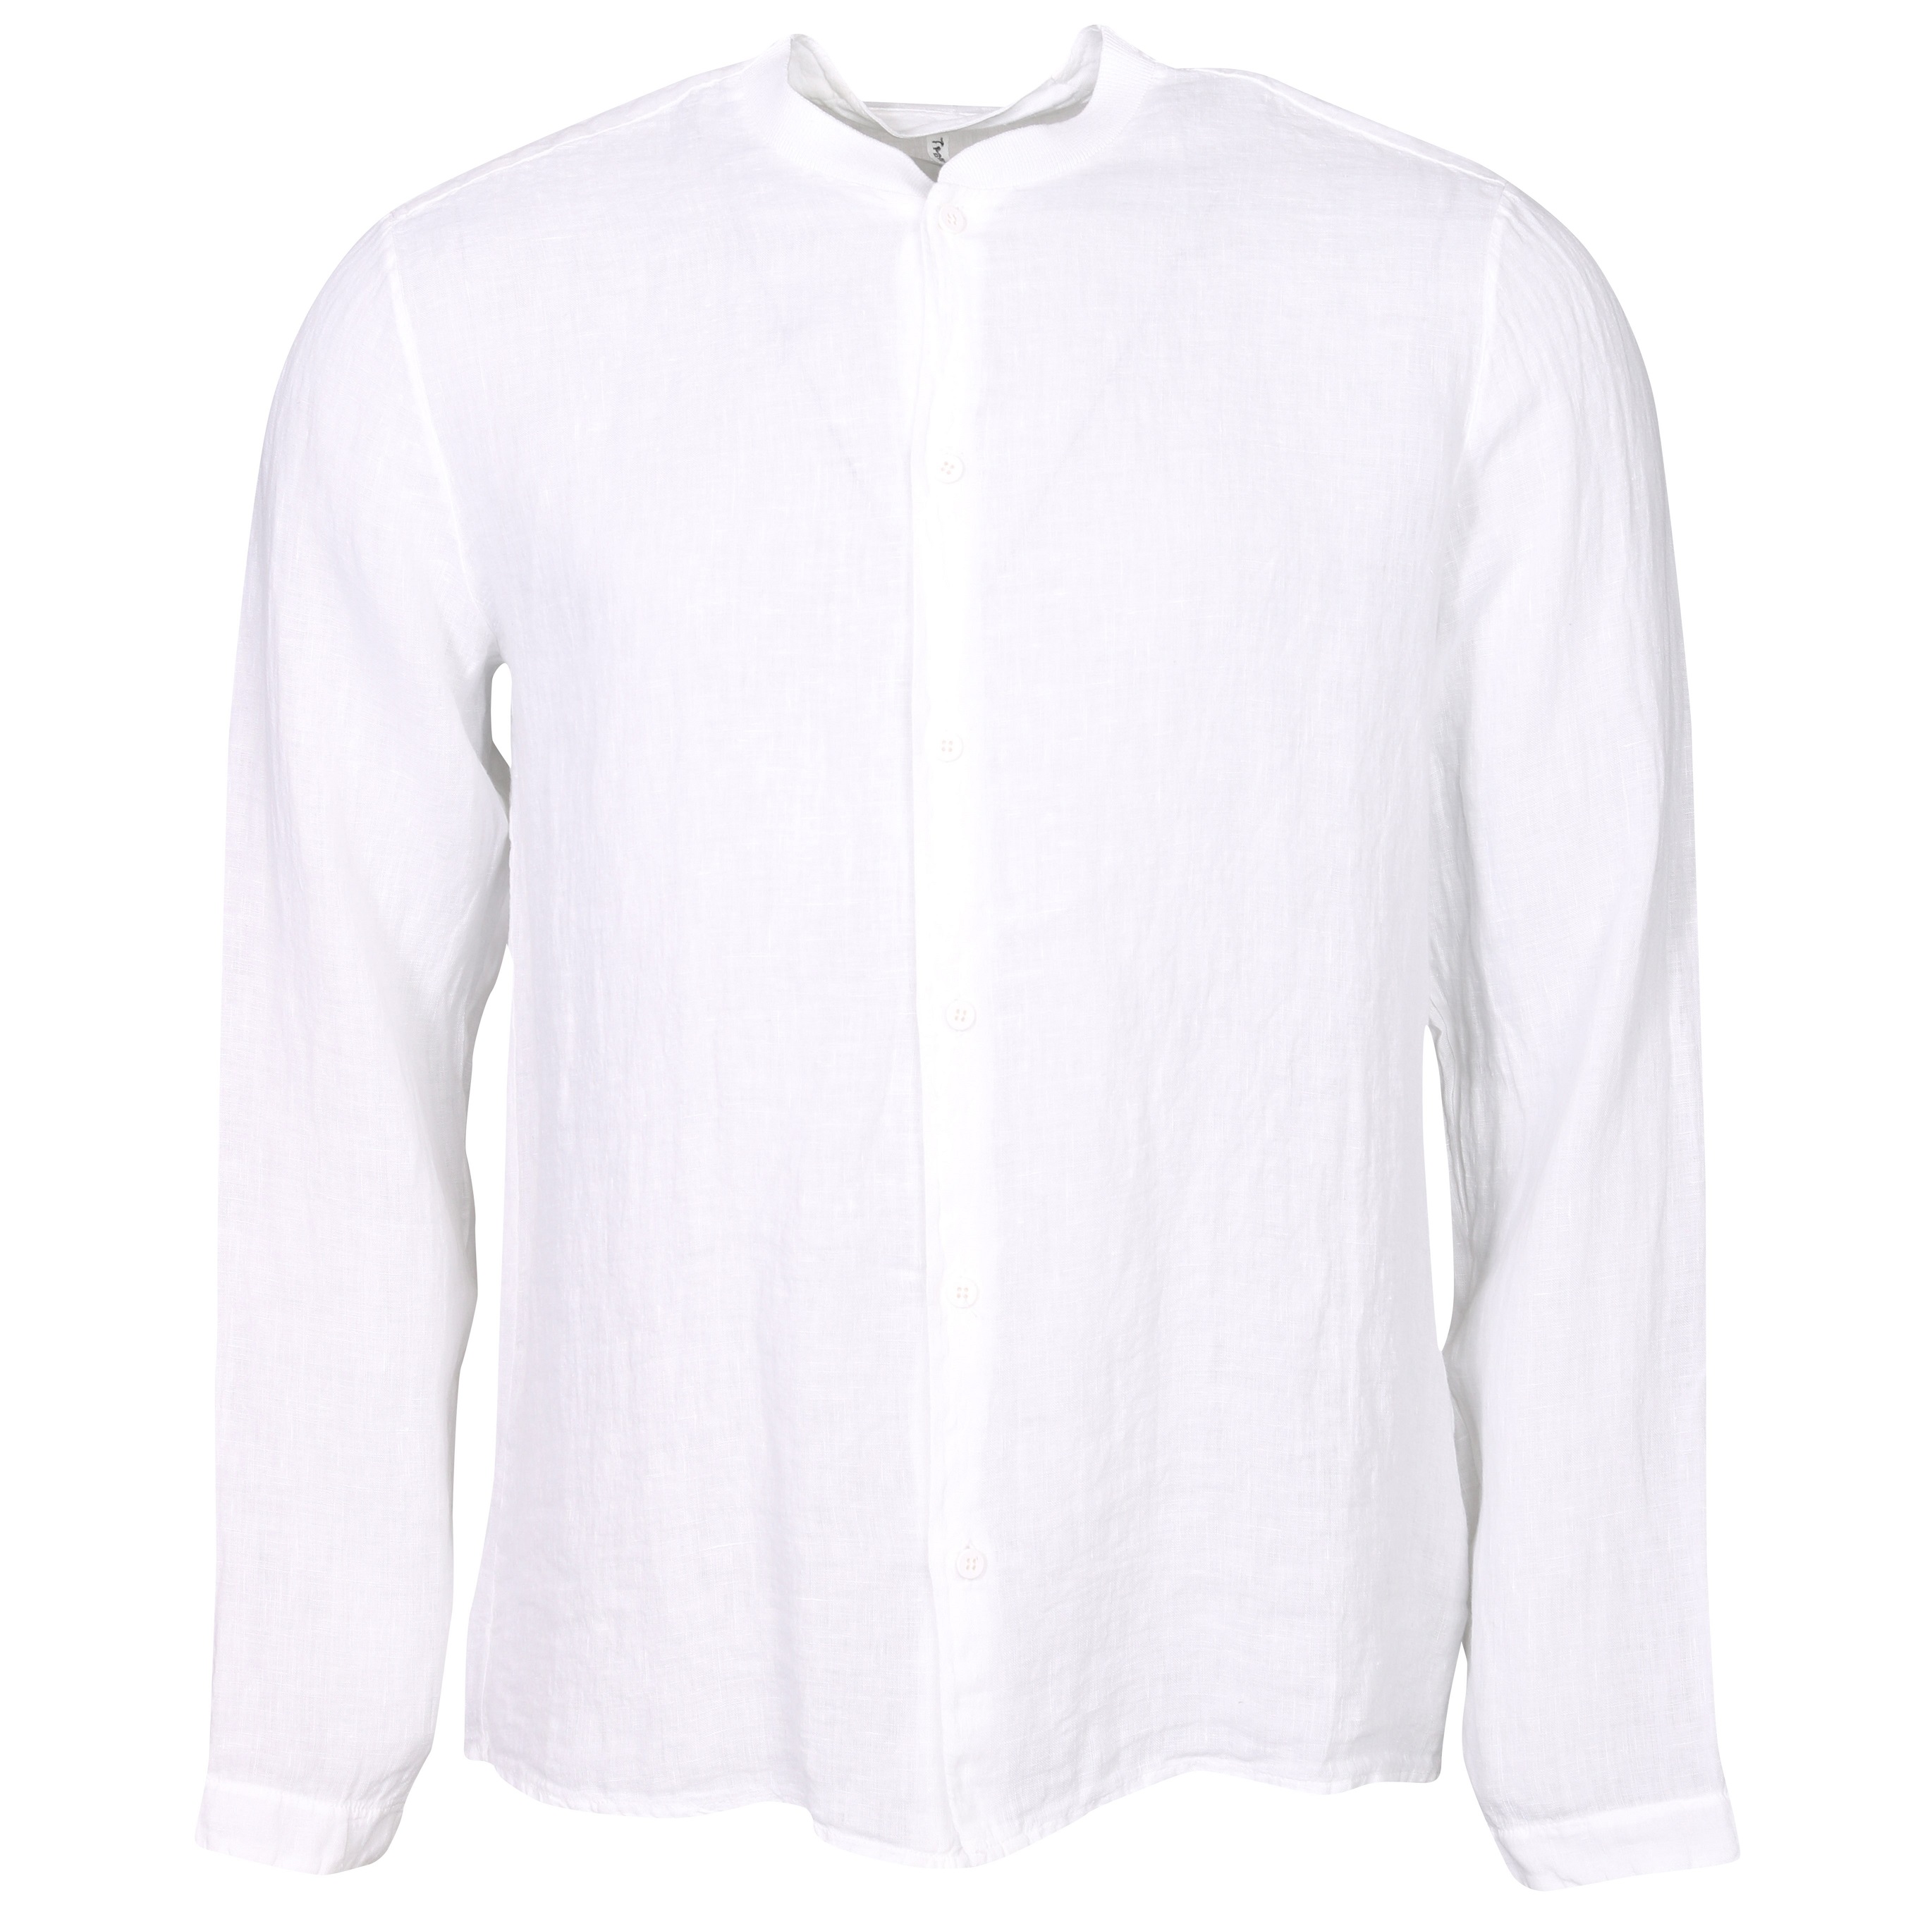 Transit Uomo Cotton Shirt in White XL